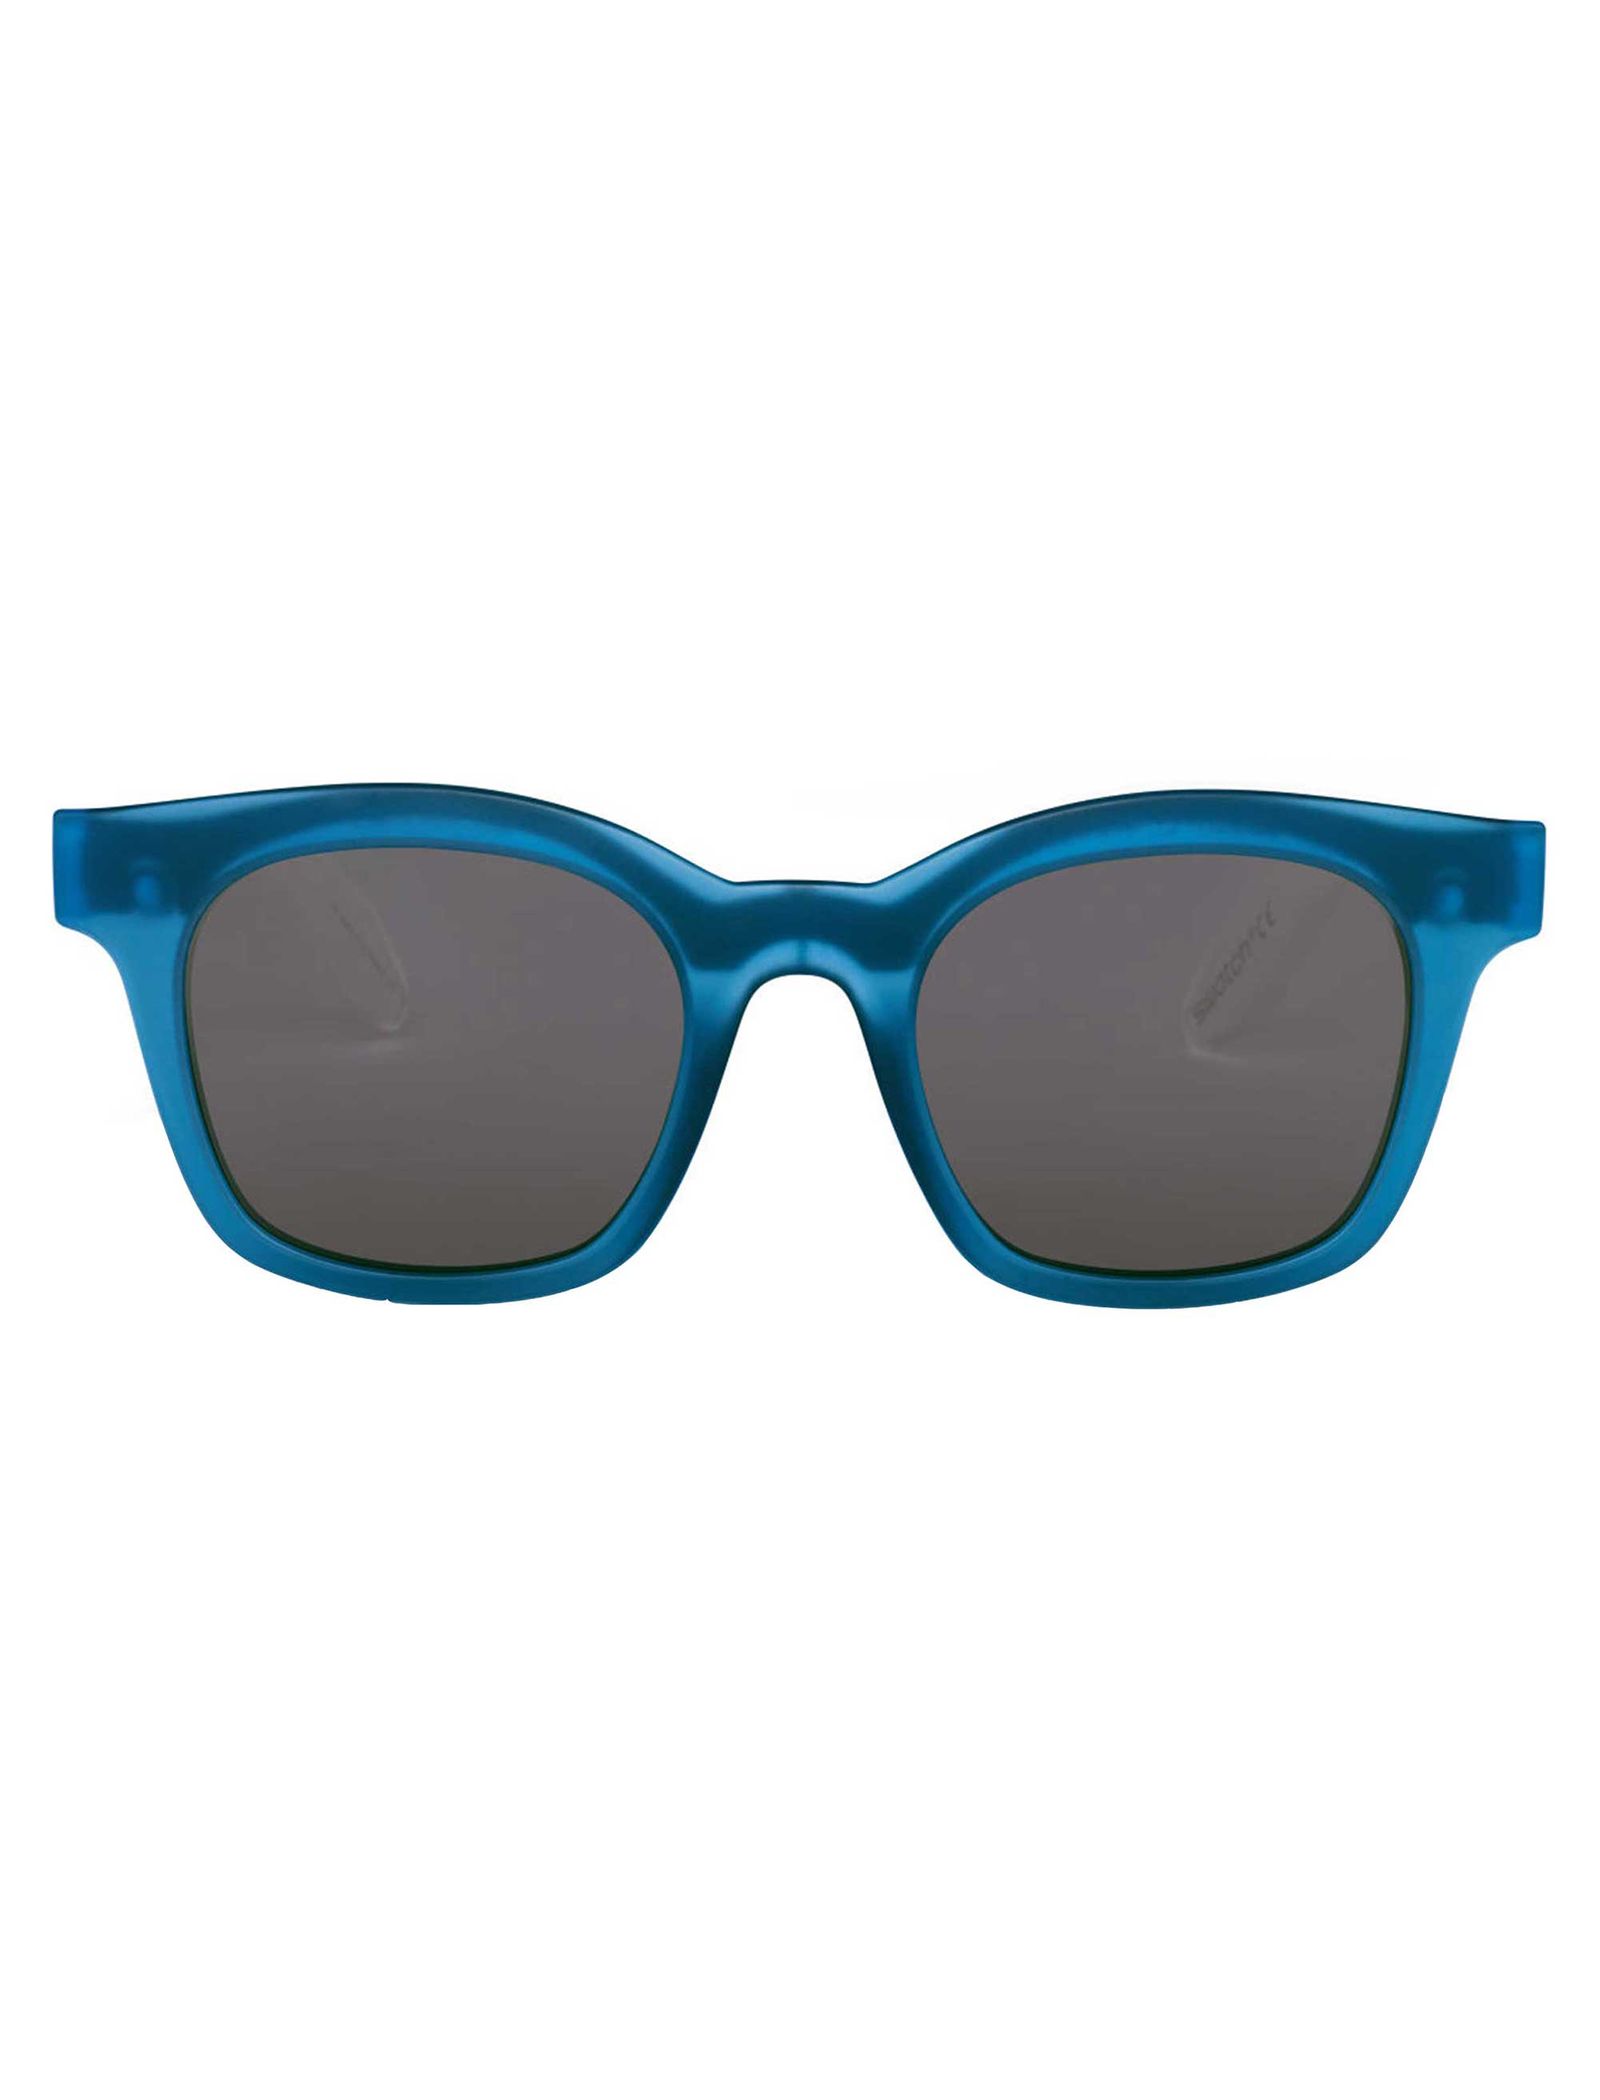 عینک آفتابی سواچ مدل SES02SMB022 - آبی - 2